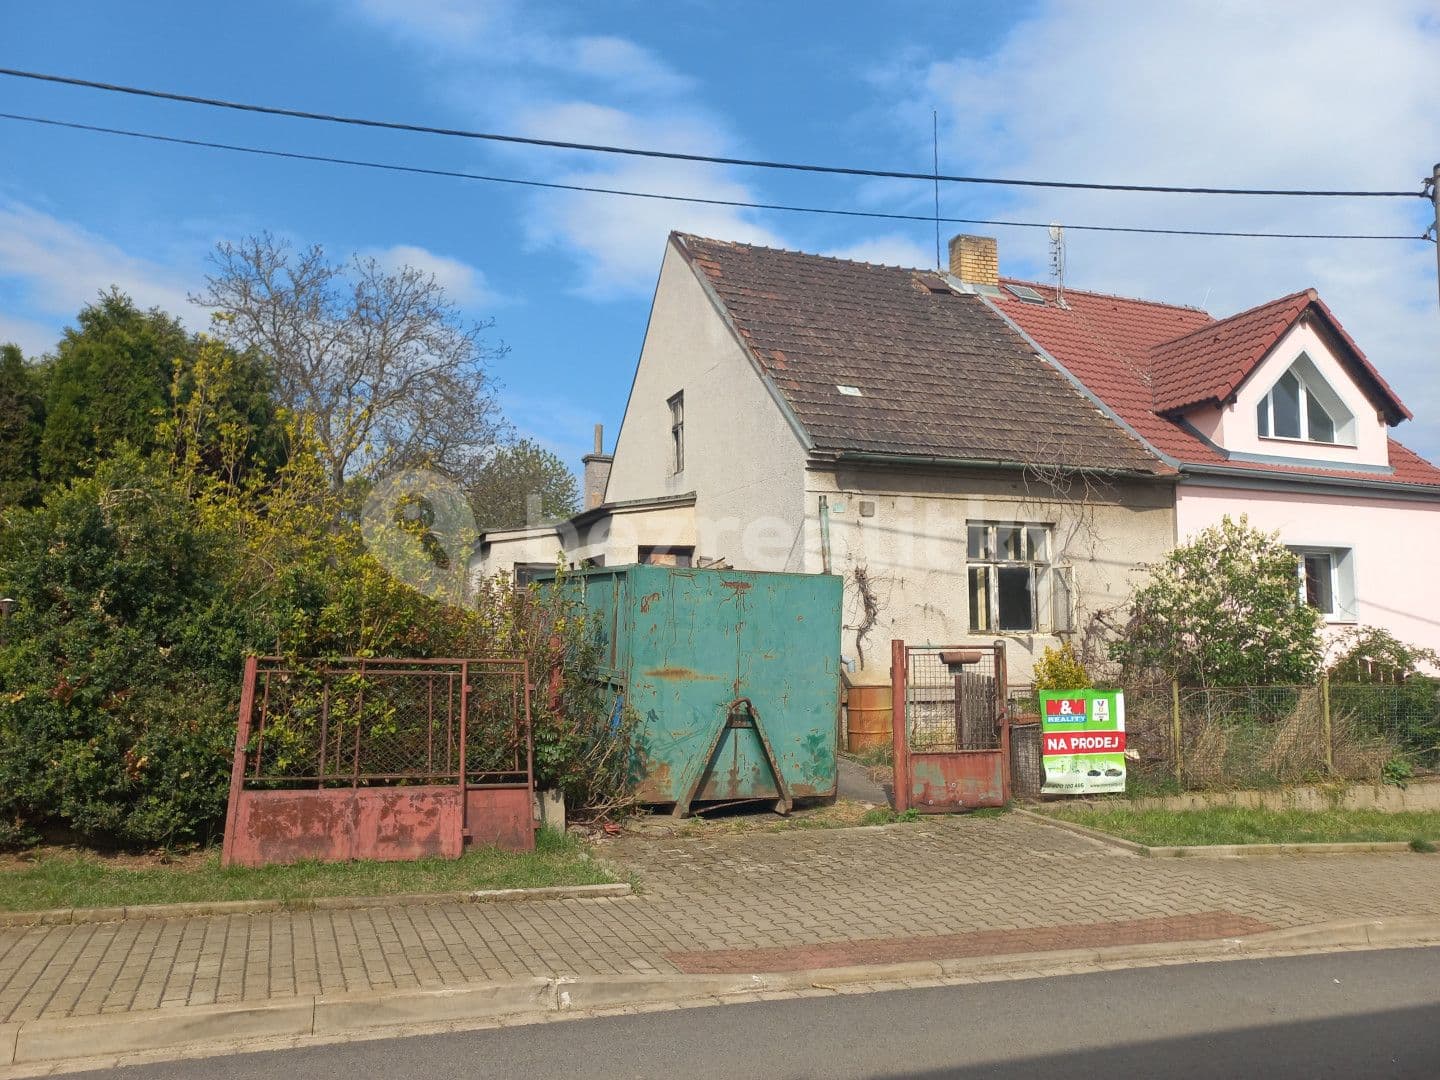 Predaj domu 105 m², pozemek 1.047 m², Tovární, Dýšina, Plzeňský kraj